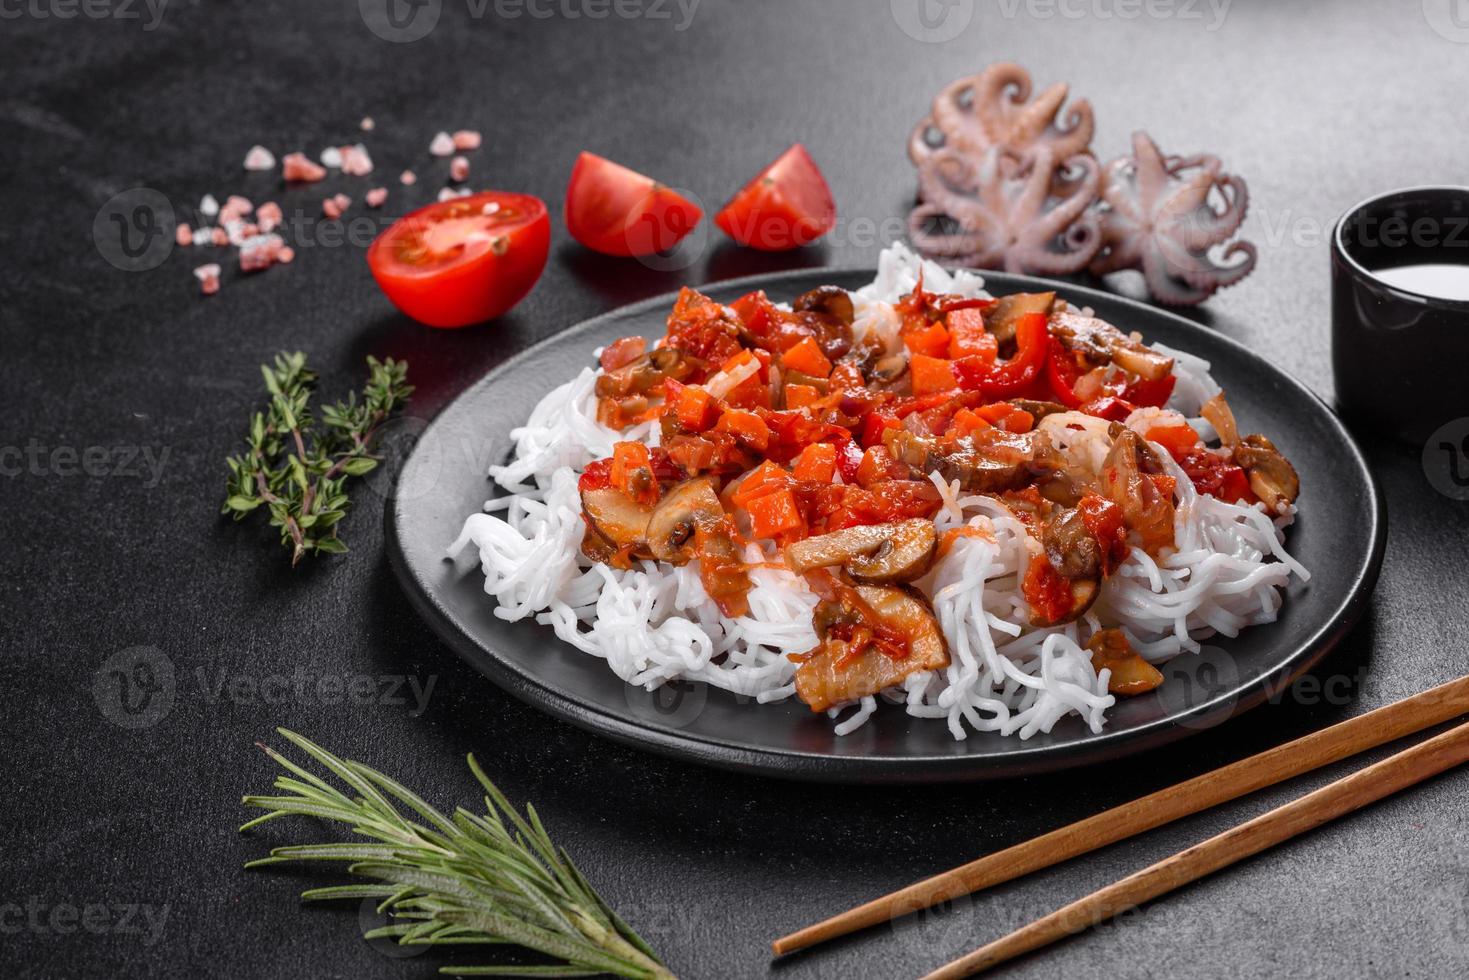 savoureuses nouilles de riz avec tomate, poivron rouge, champignons et fruits de mer photo